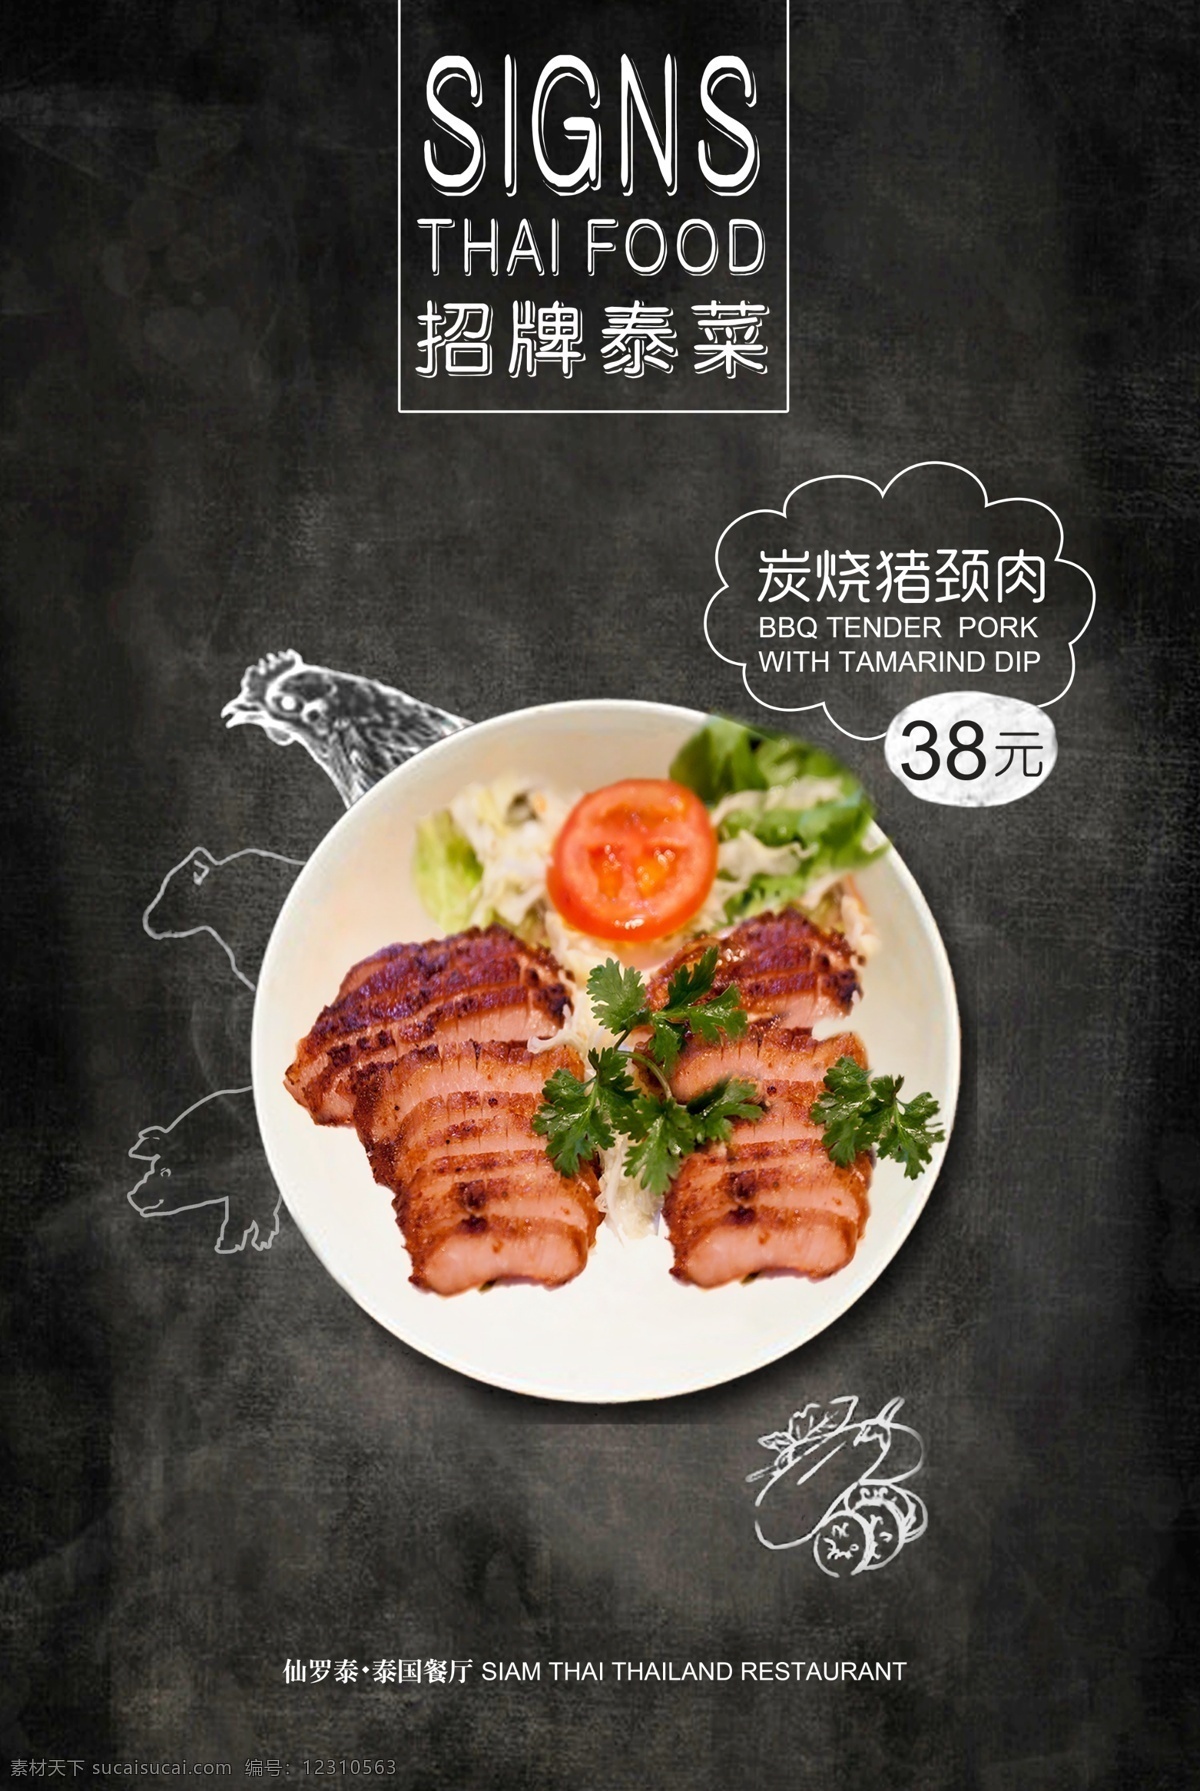 泰国招牌菜 招牌菜 泰国 炭烧猪颈肉 猪 猪简画 菜品 美食 美食海报 招贴设计